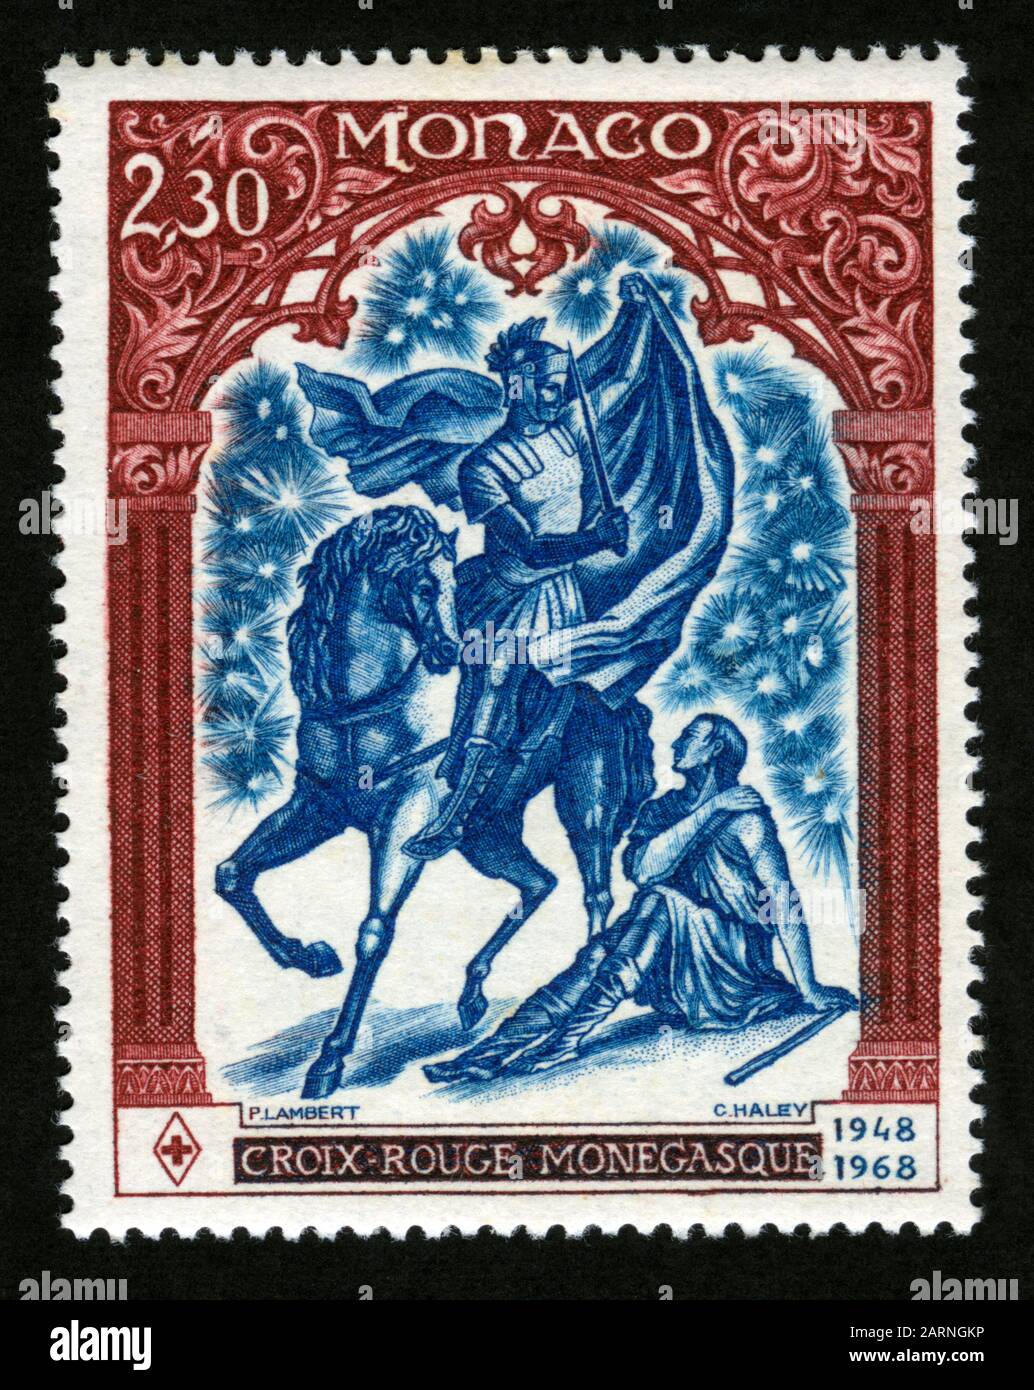 Imprimé timbres à Monaco, Croix-Rouge monégasque Banque D'Images